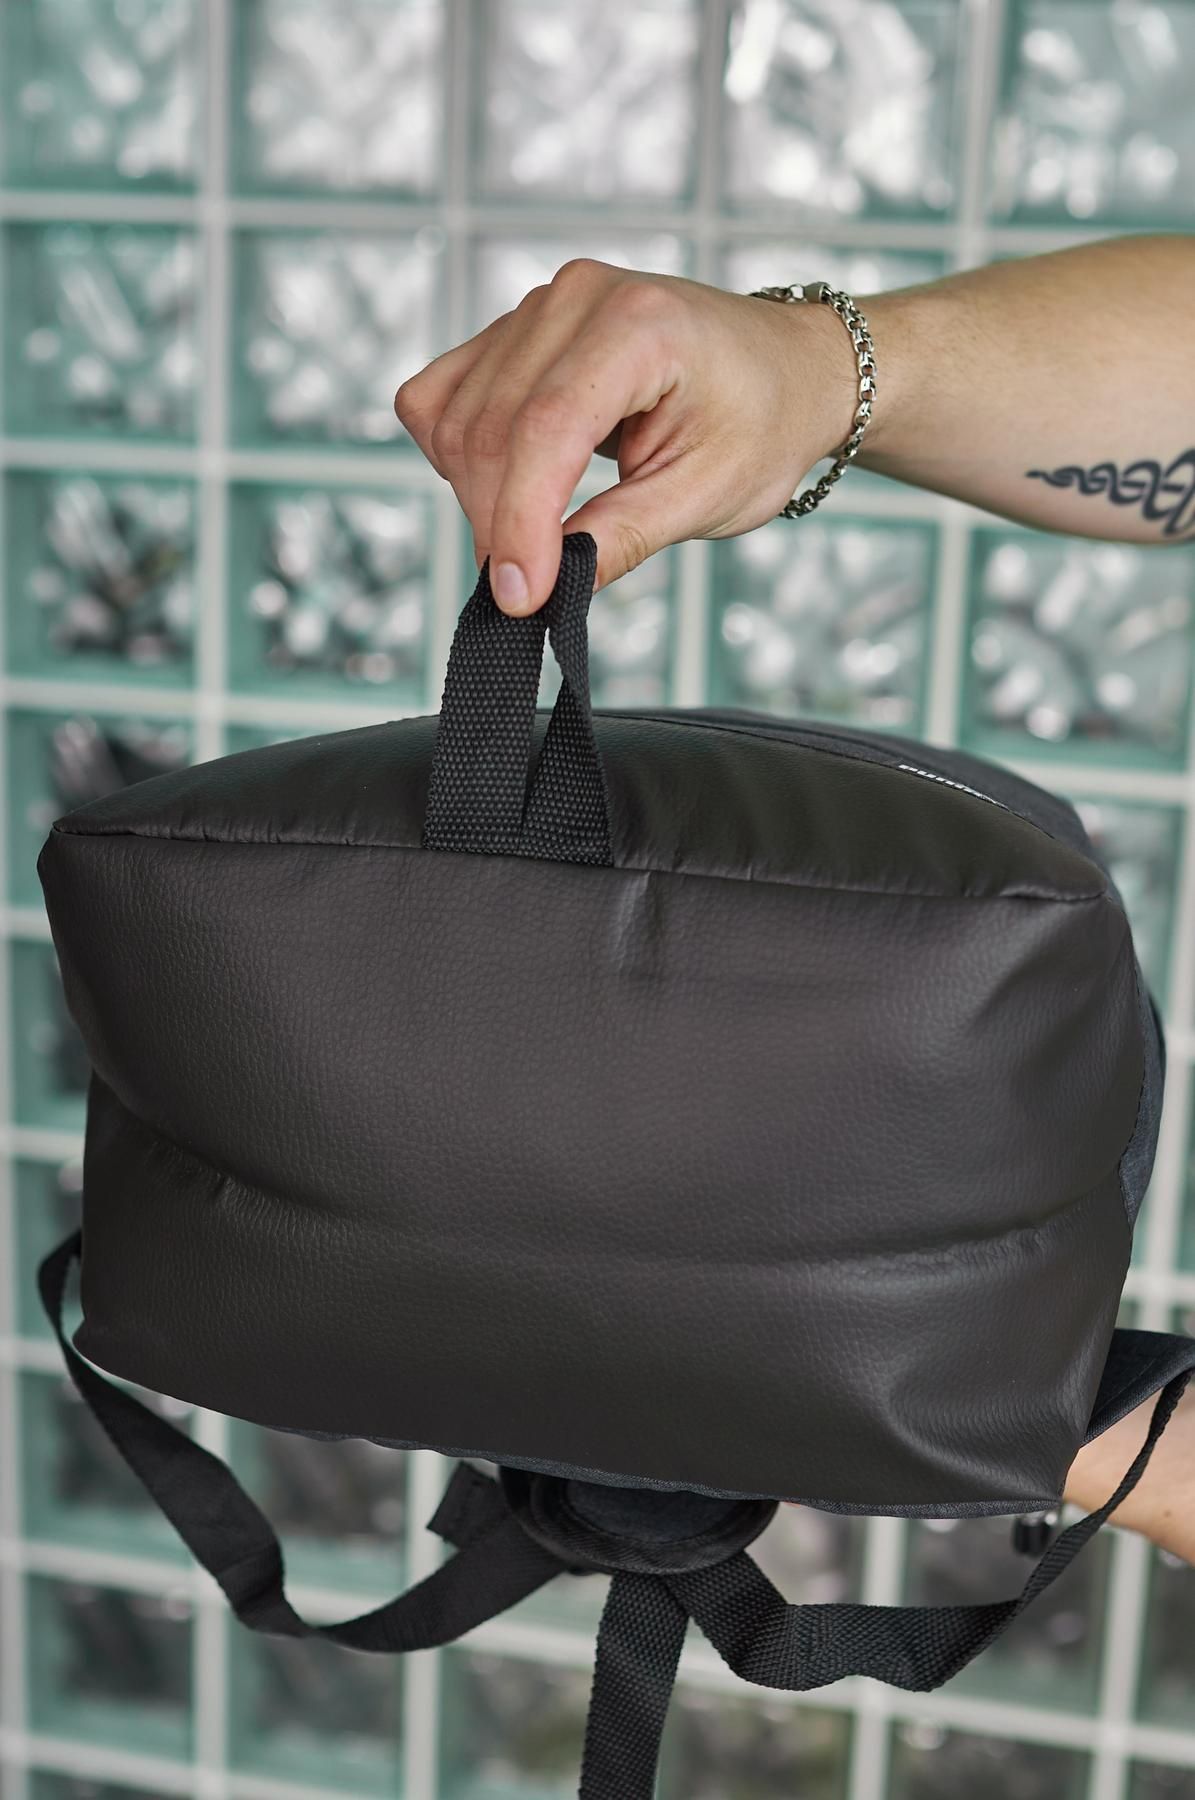 Мужской спортивный рюкзак тёмно-серый, городской puma, портфель пума.